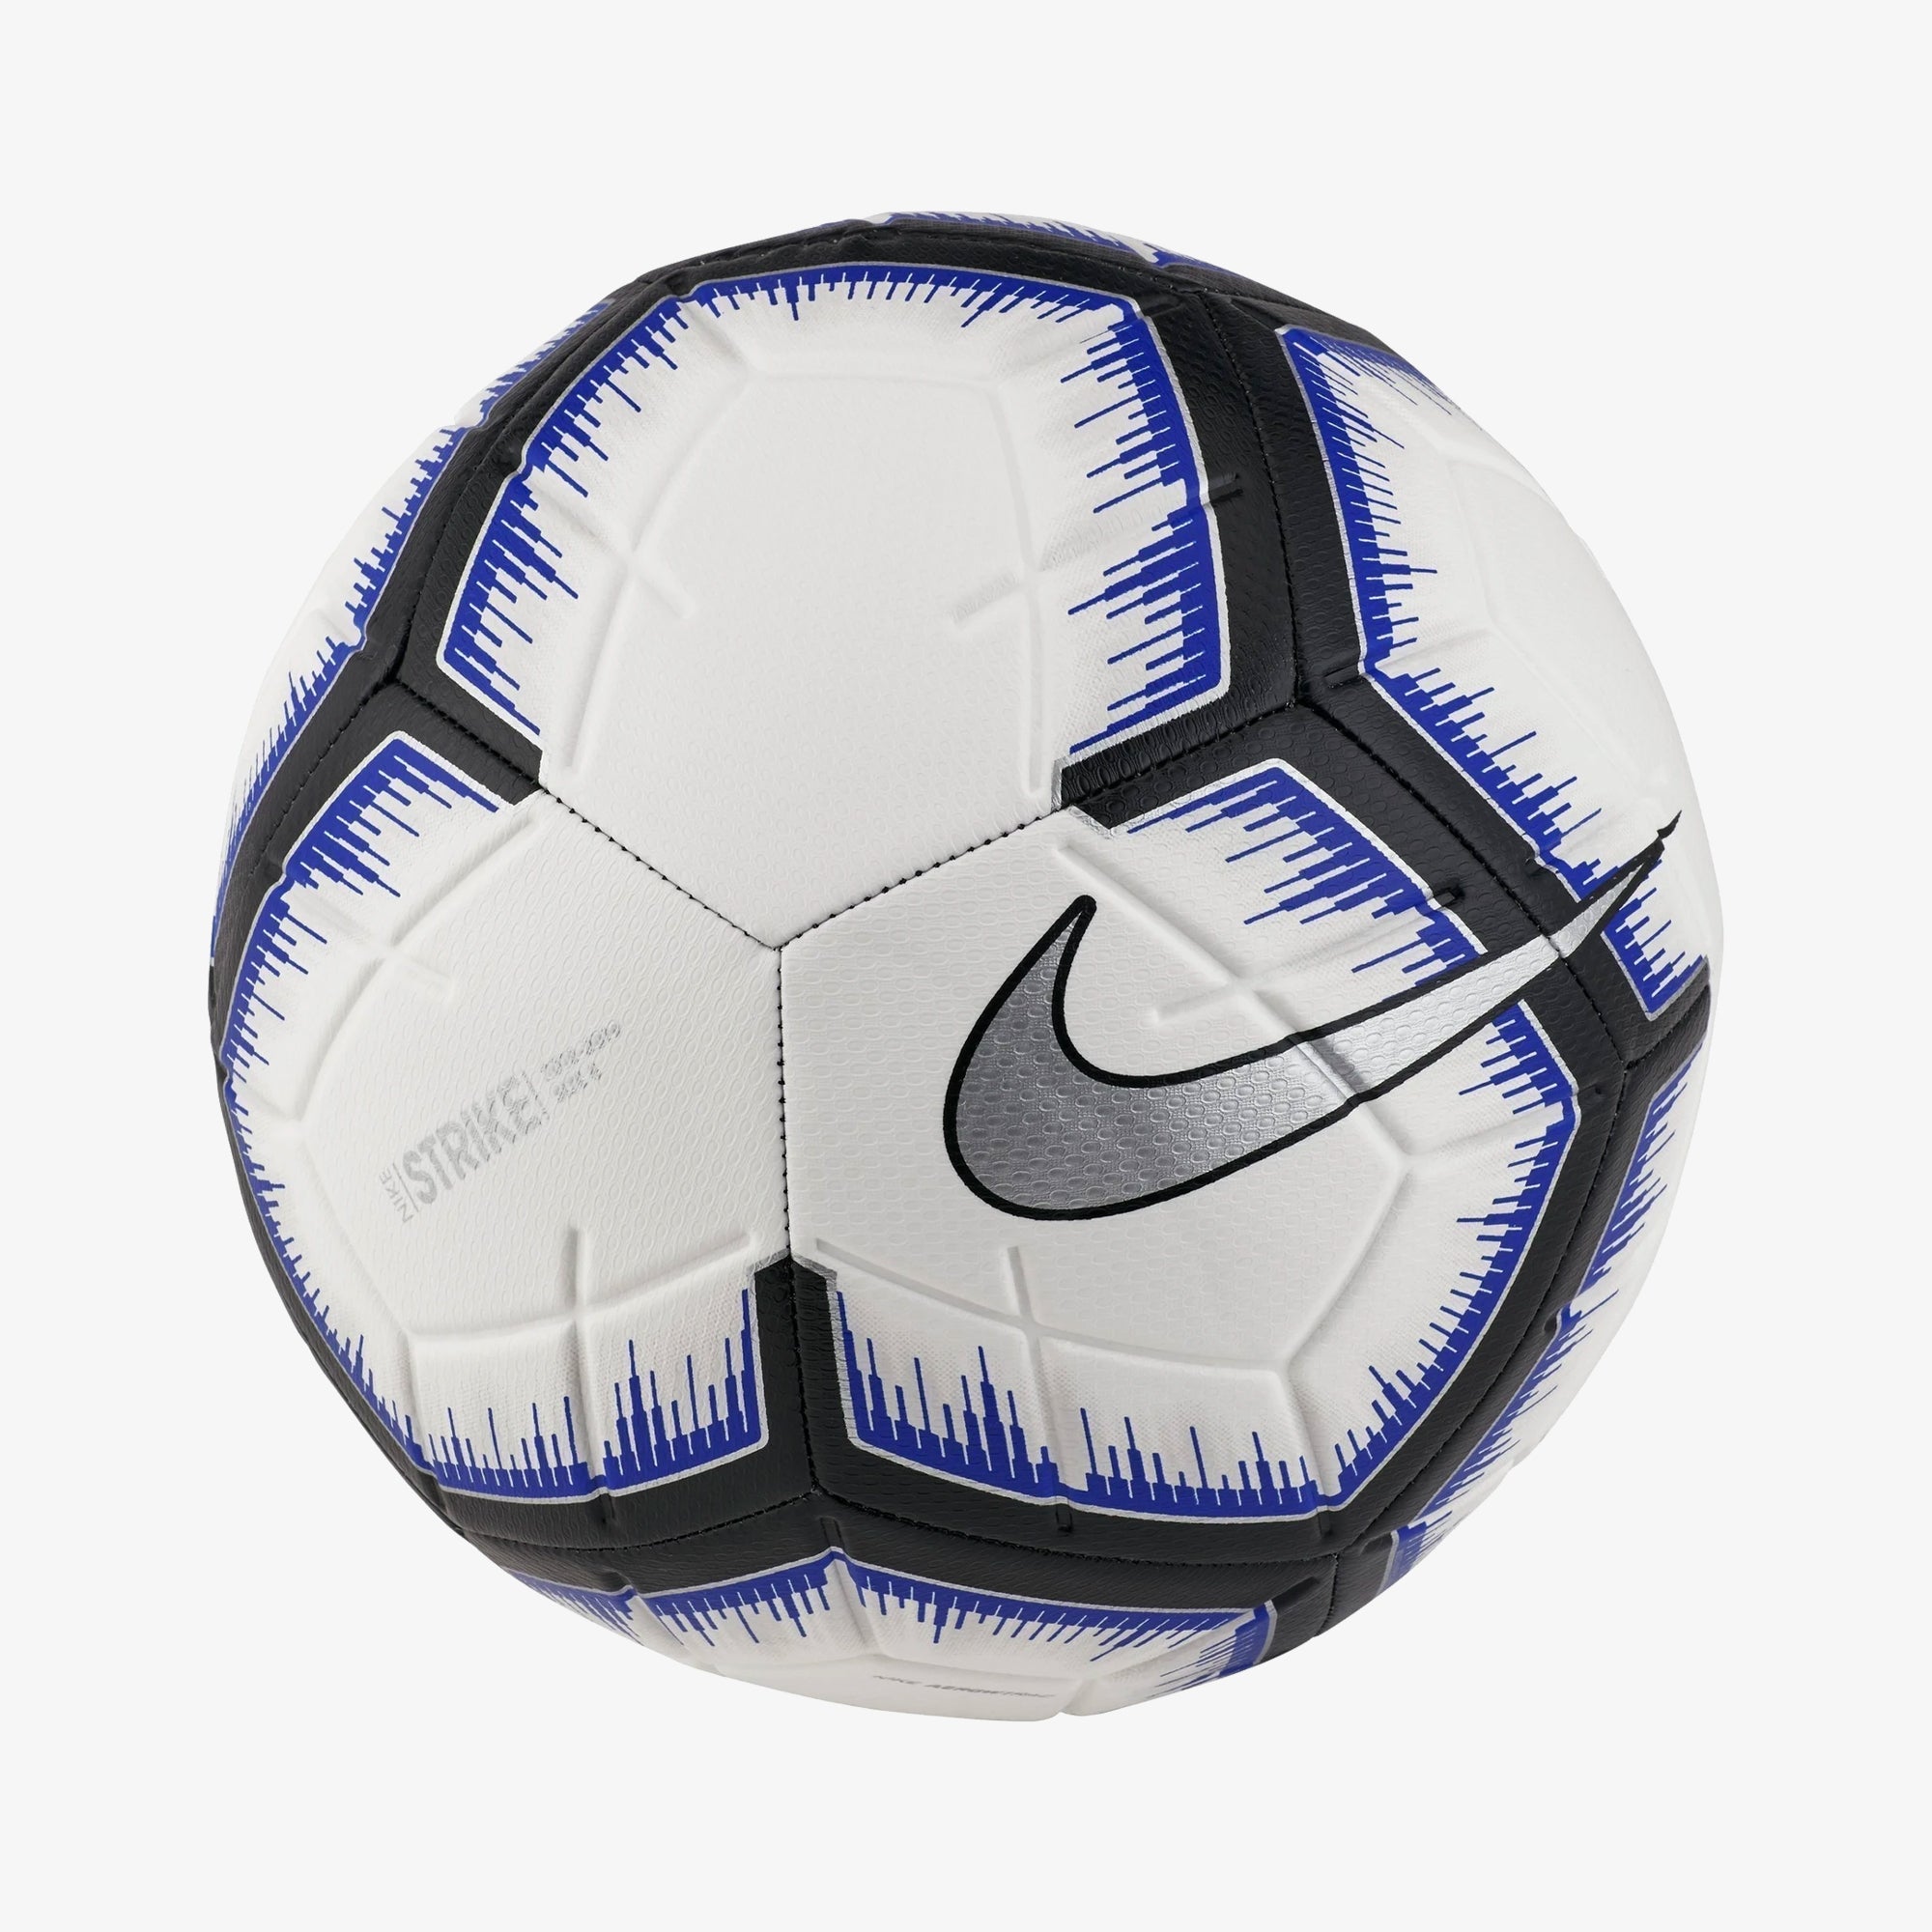 Strike Soccer Ball - White/Black/Blue 